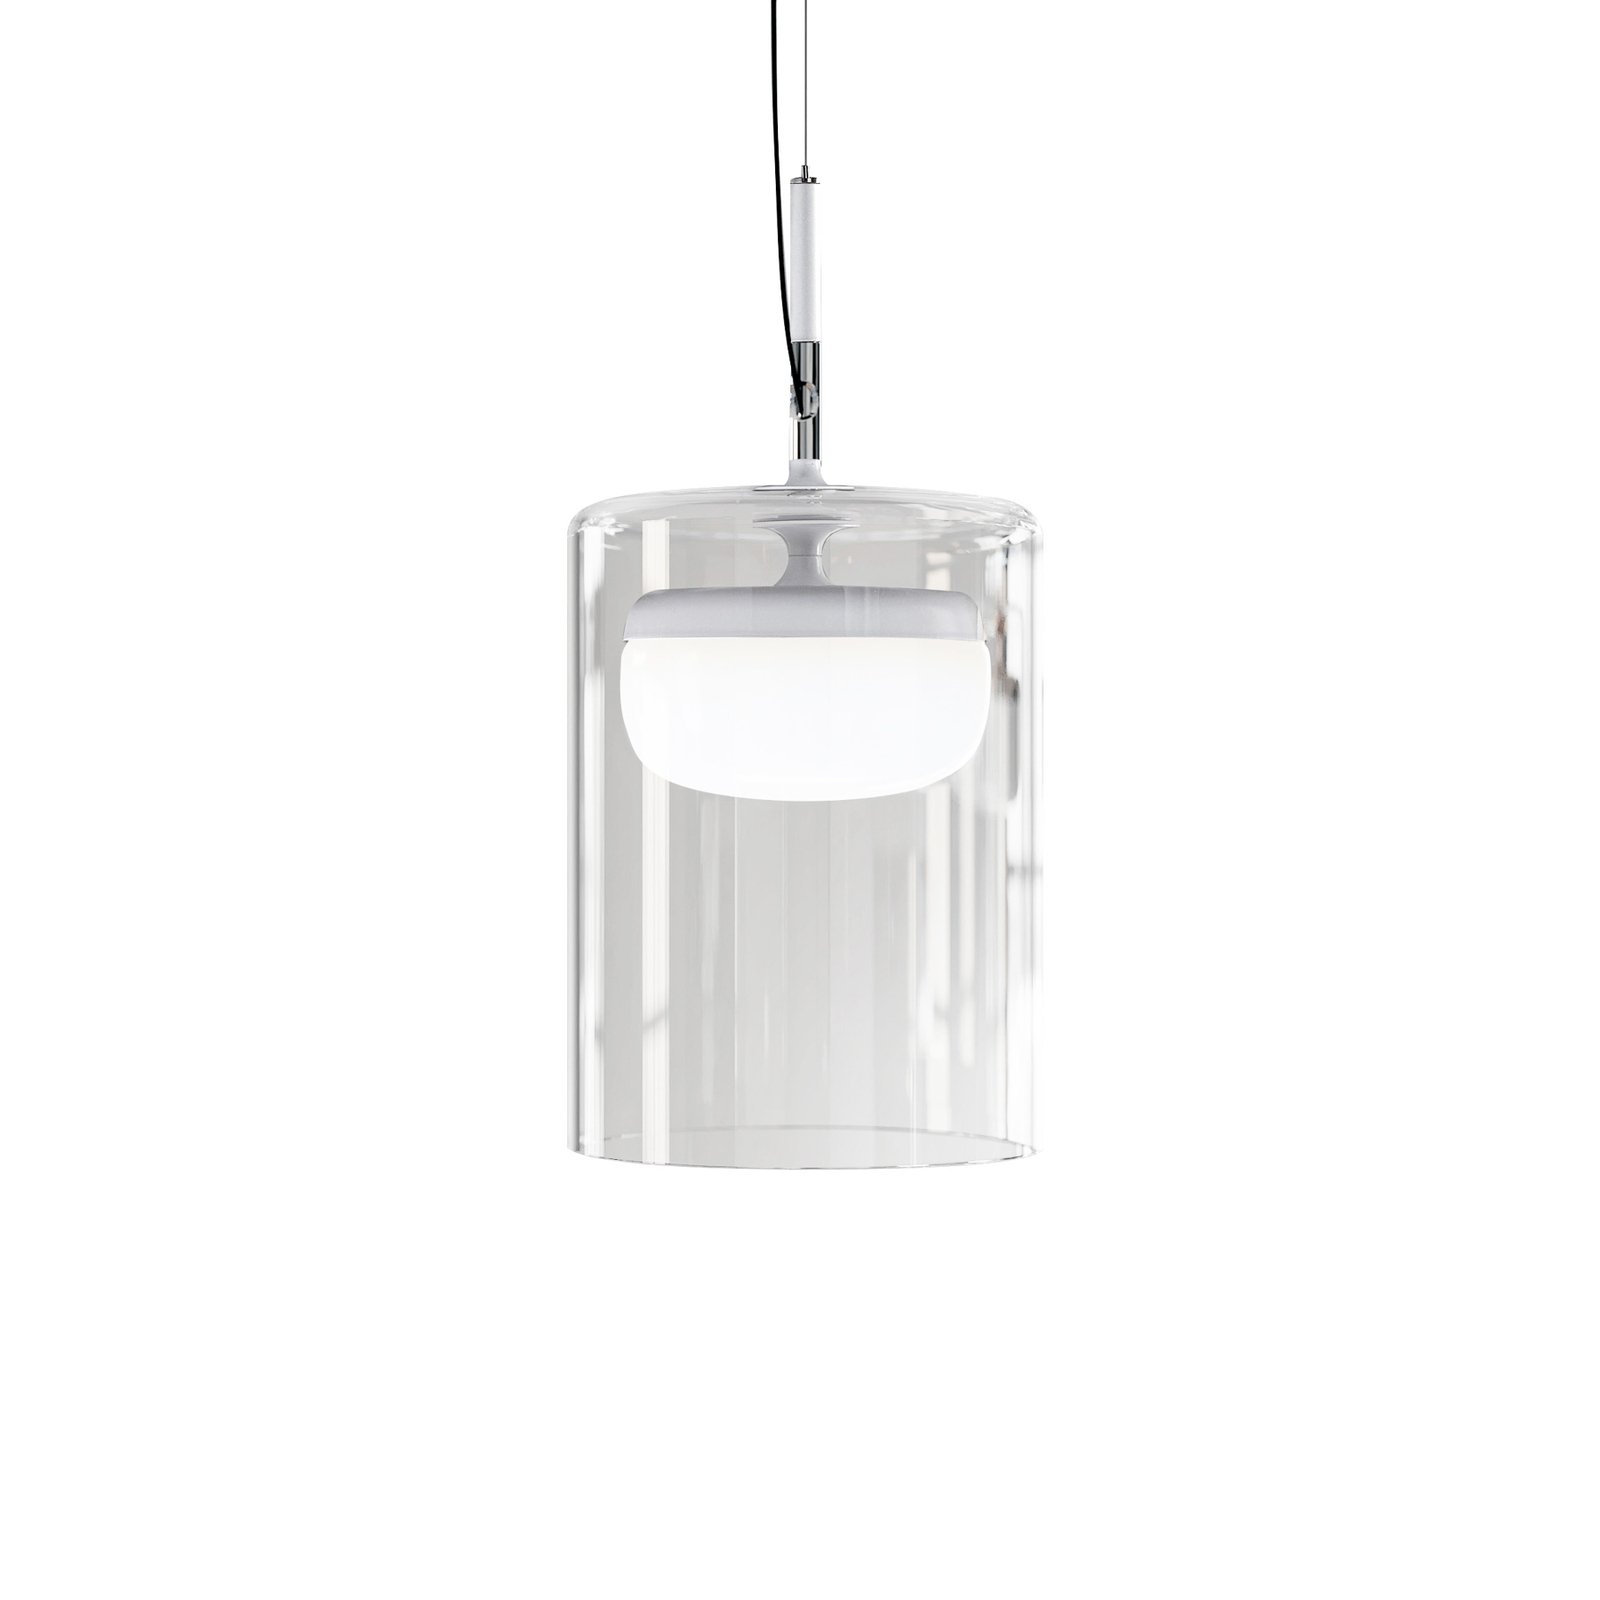 Prandina Diver LED hanging lamp S1 2,700 K white